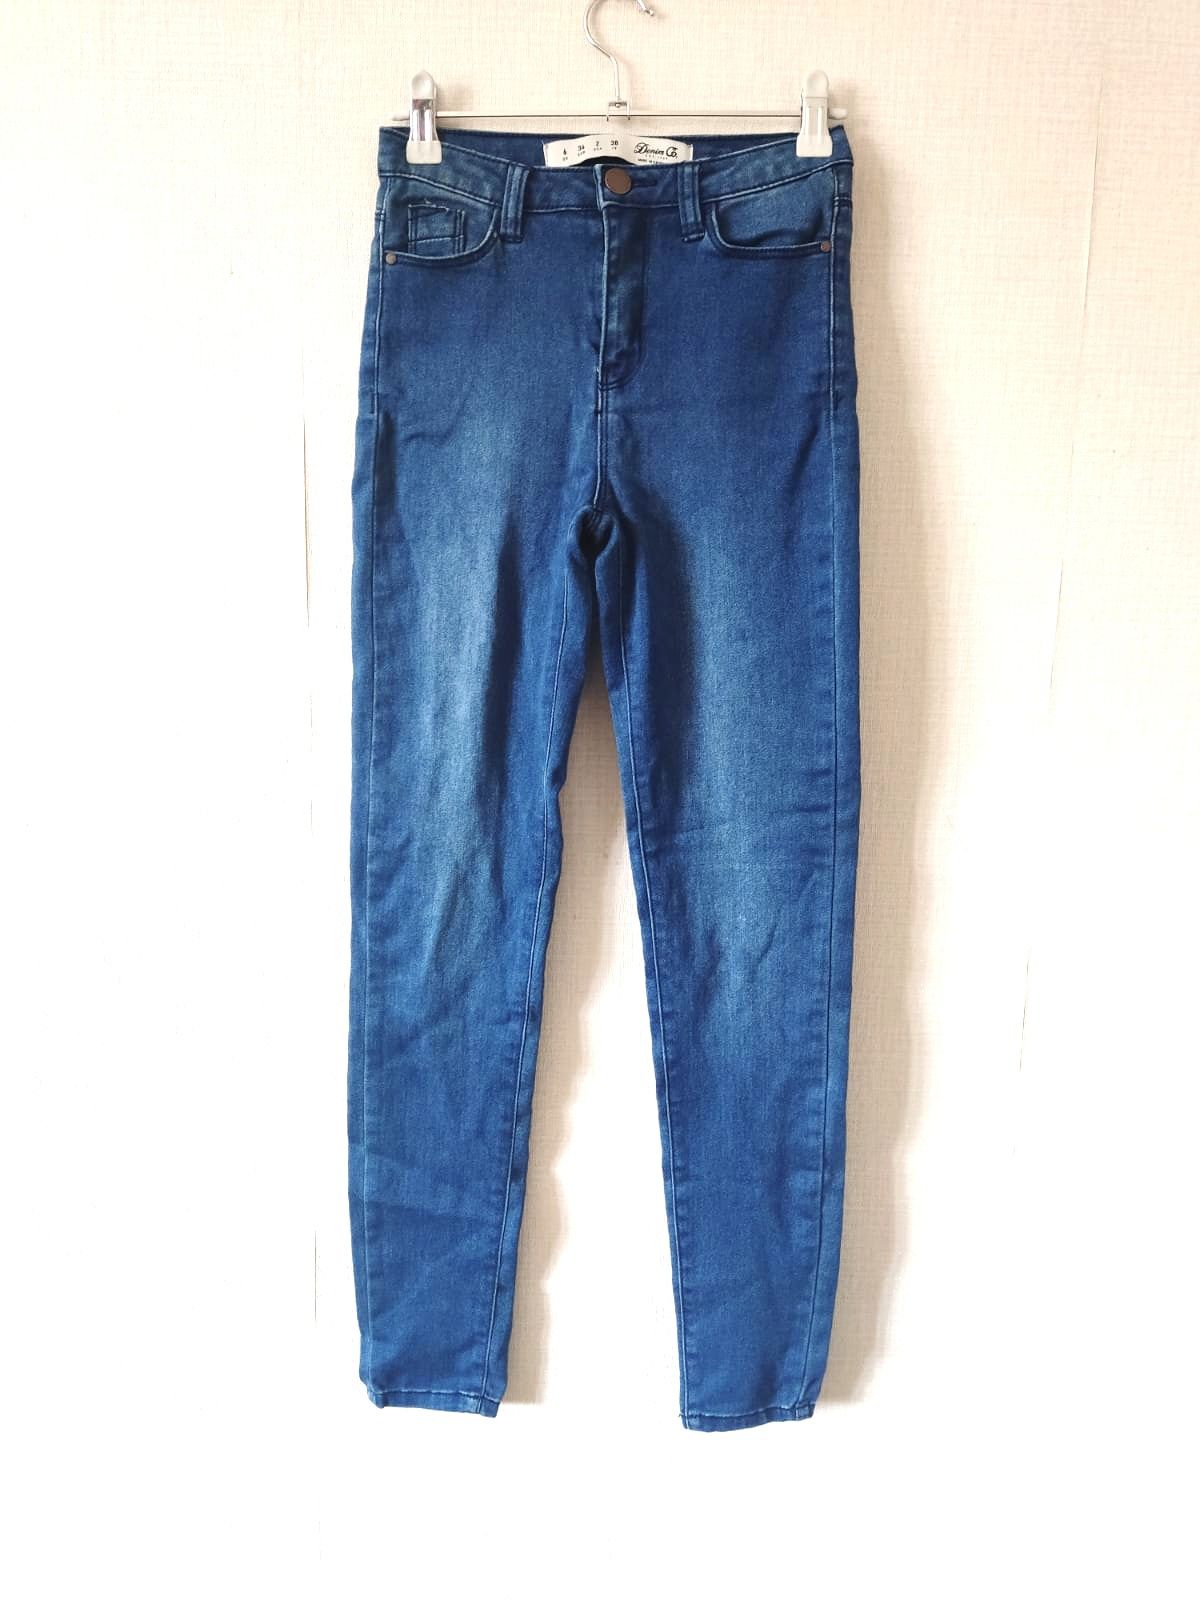 Spodnie dżinsowe jeansy rurki XS